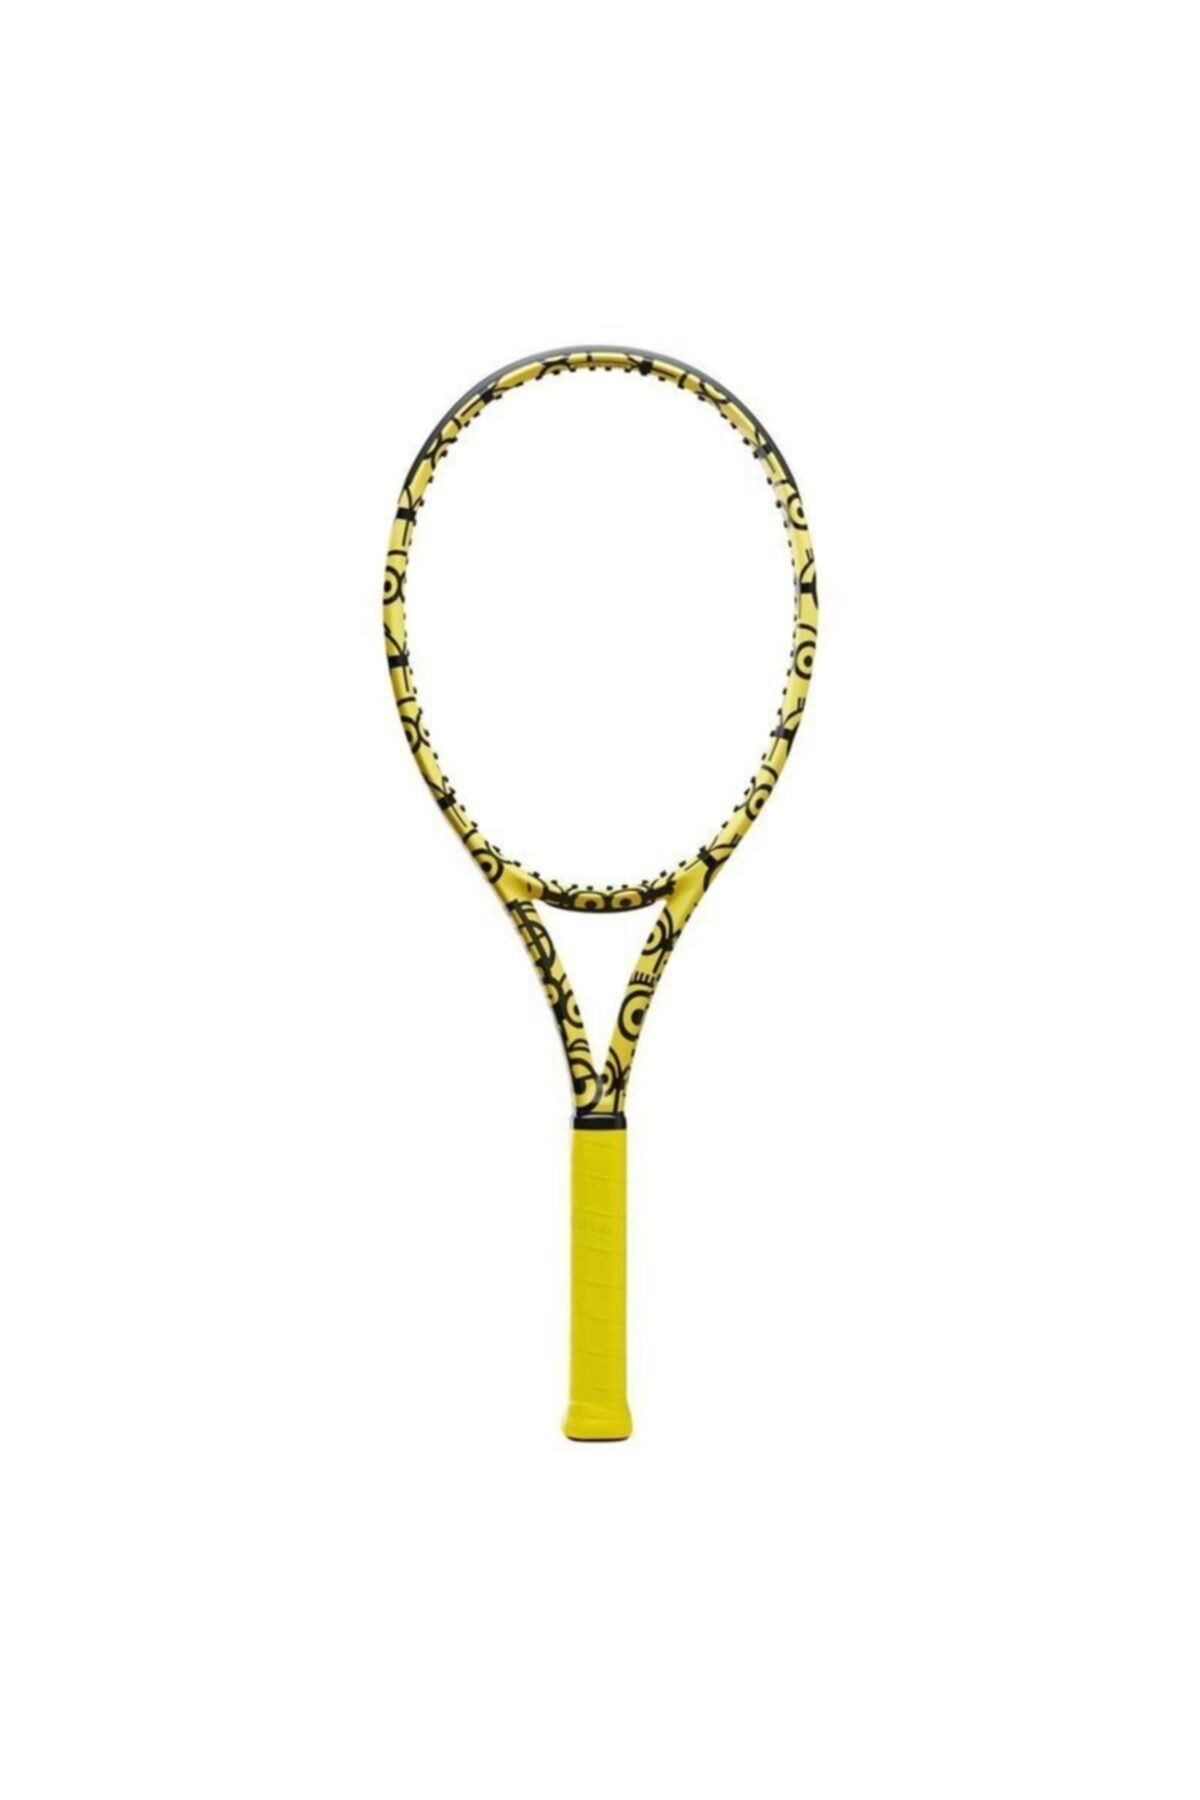 Wilson Minions Ultra 100 Tenis Raketi Wr064811